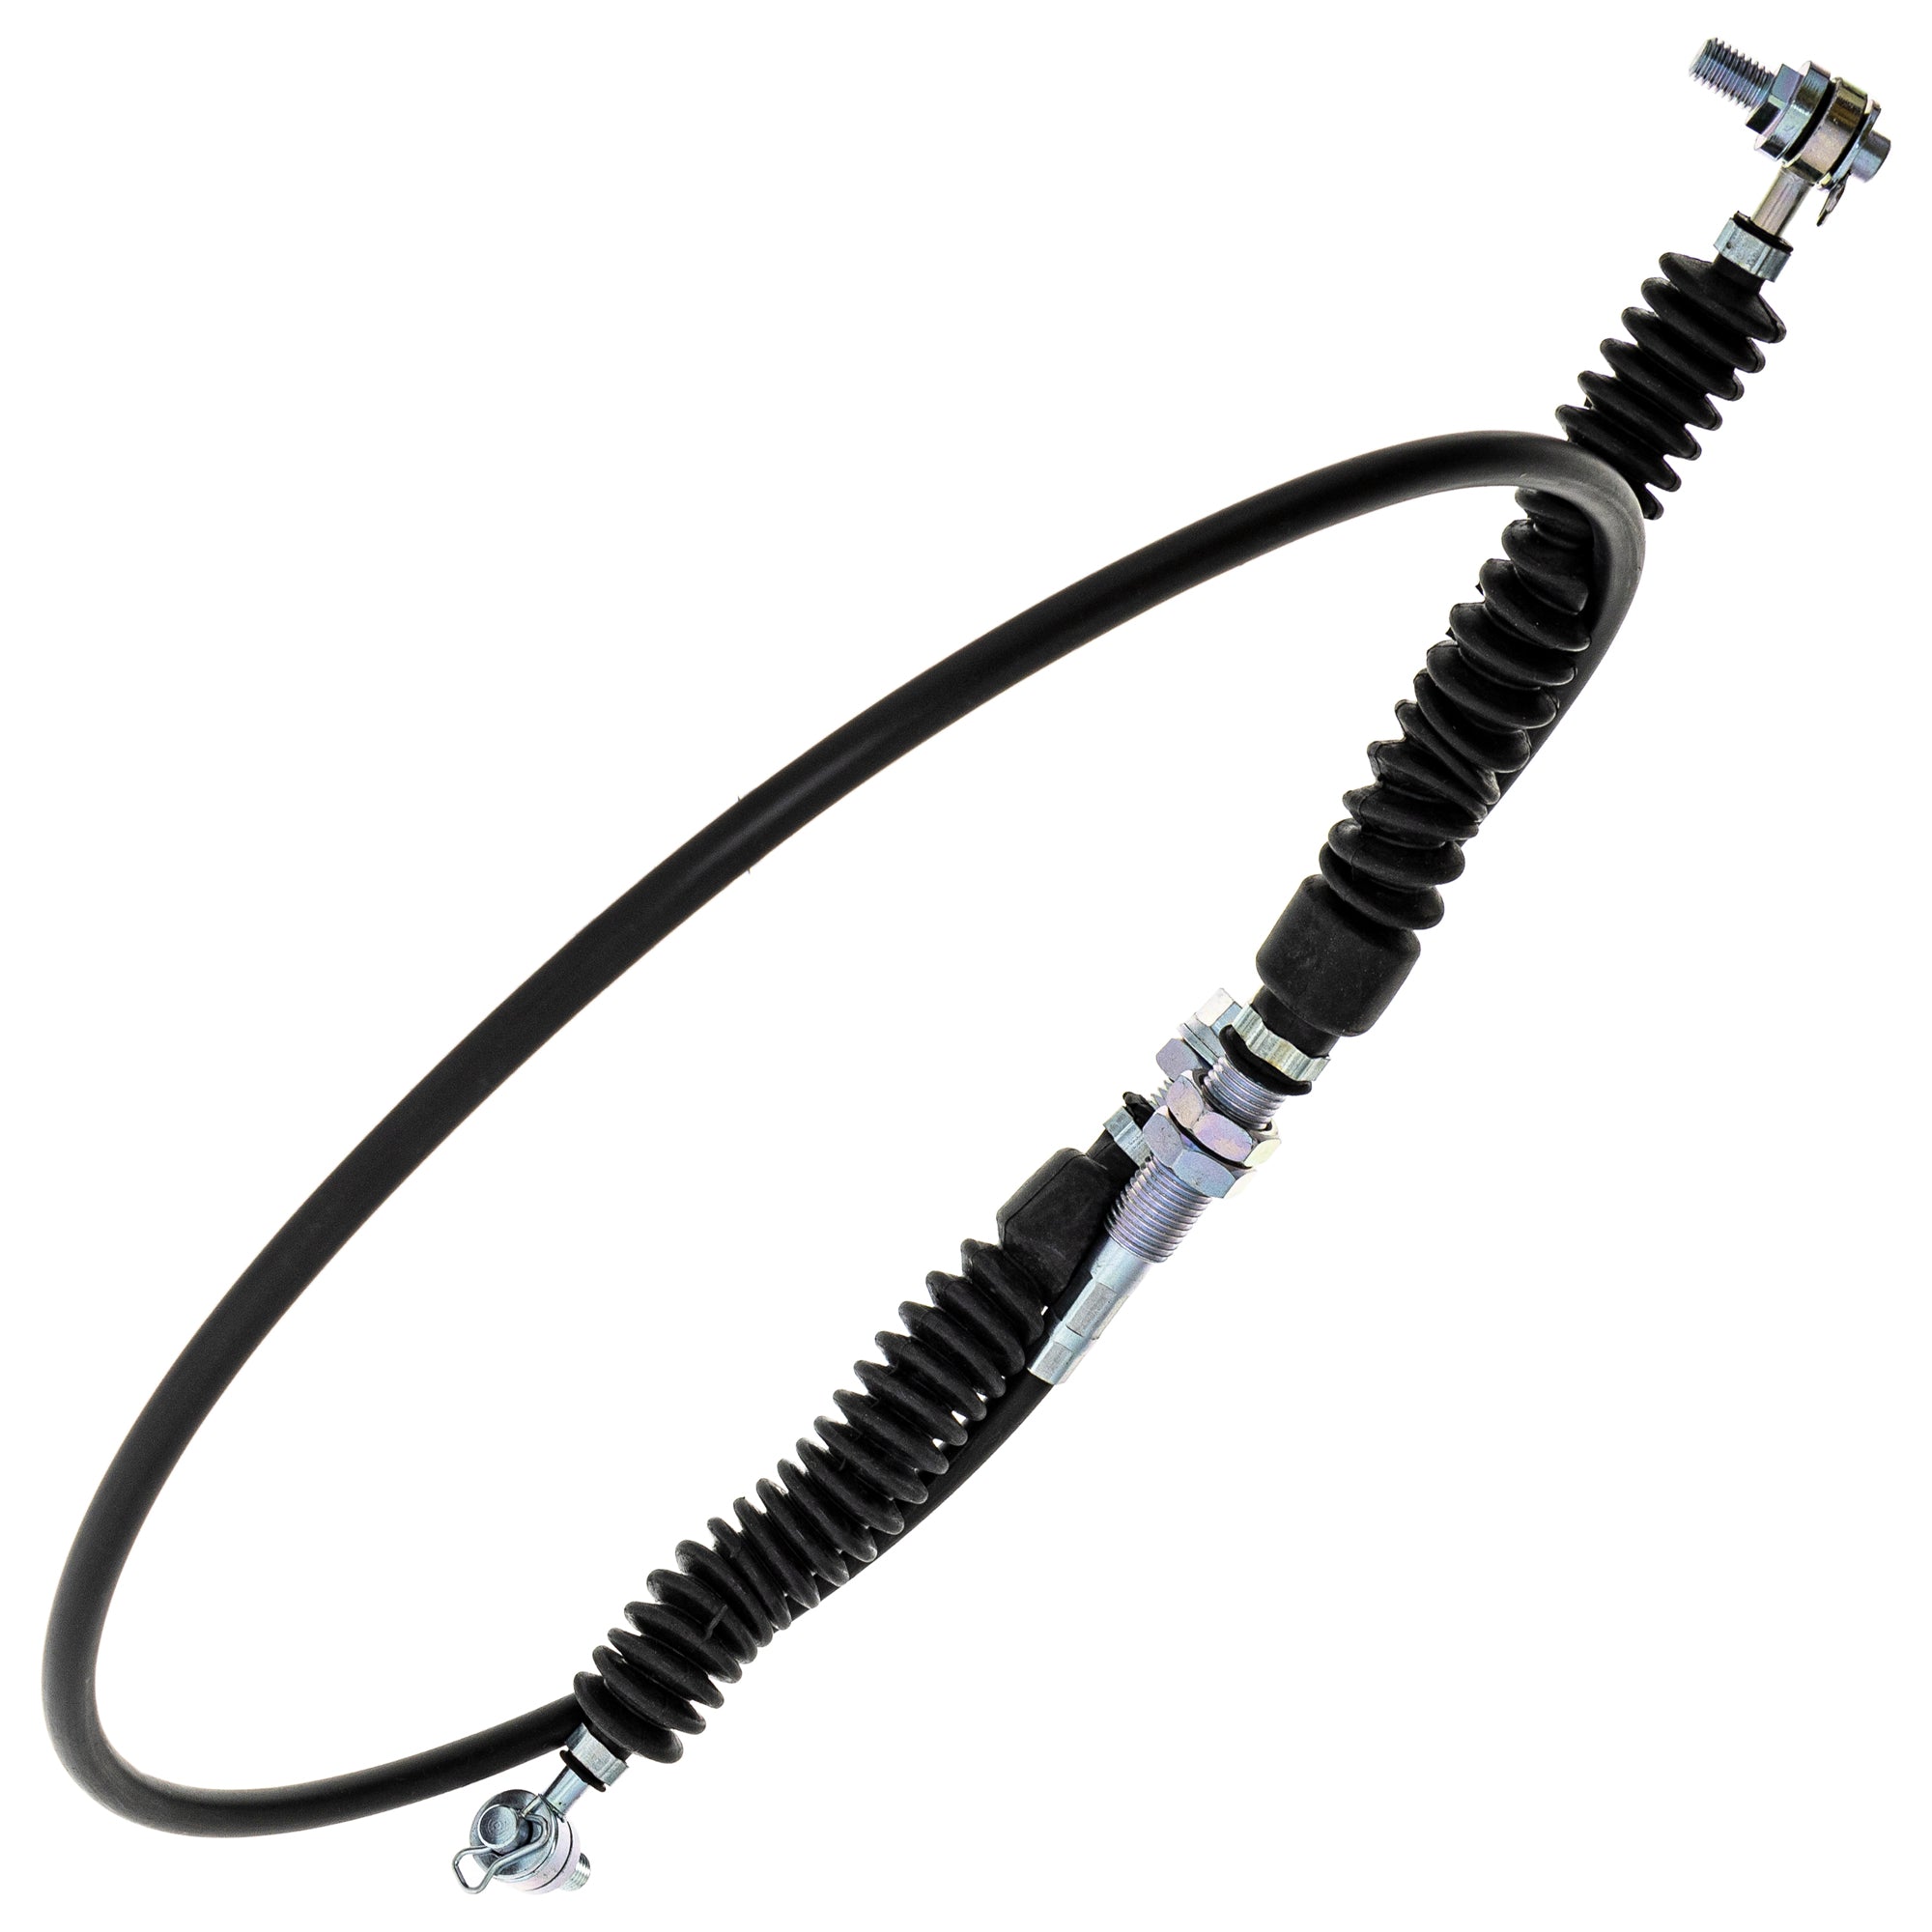 Shifter Cable for Polaris RZR 570 900 XP EFI 7081620 ATV